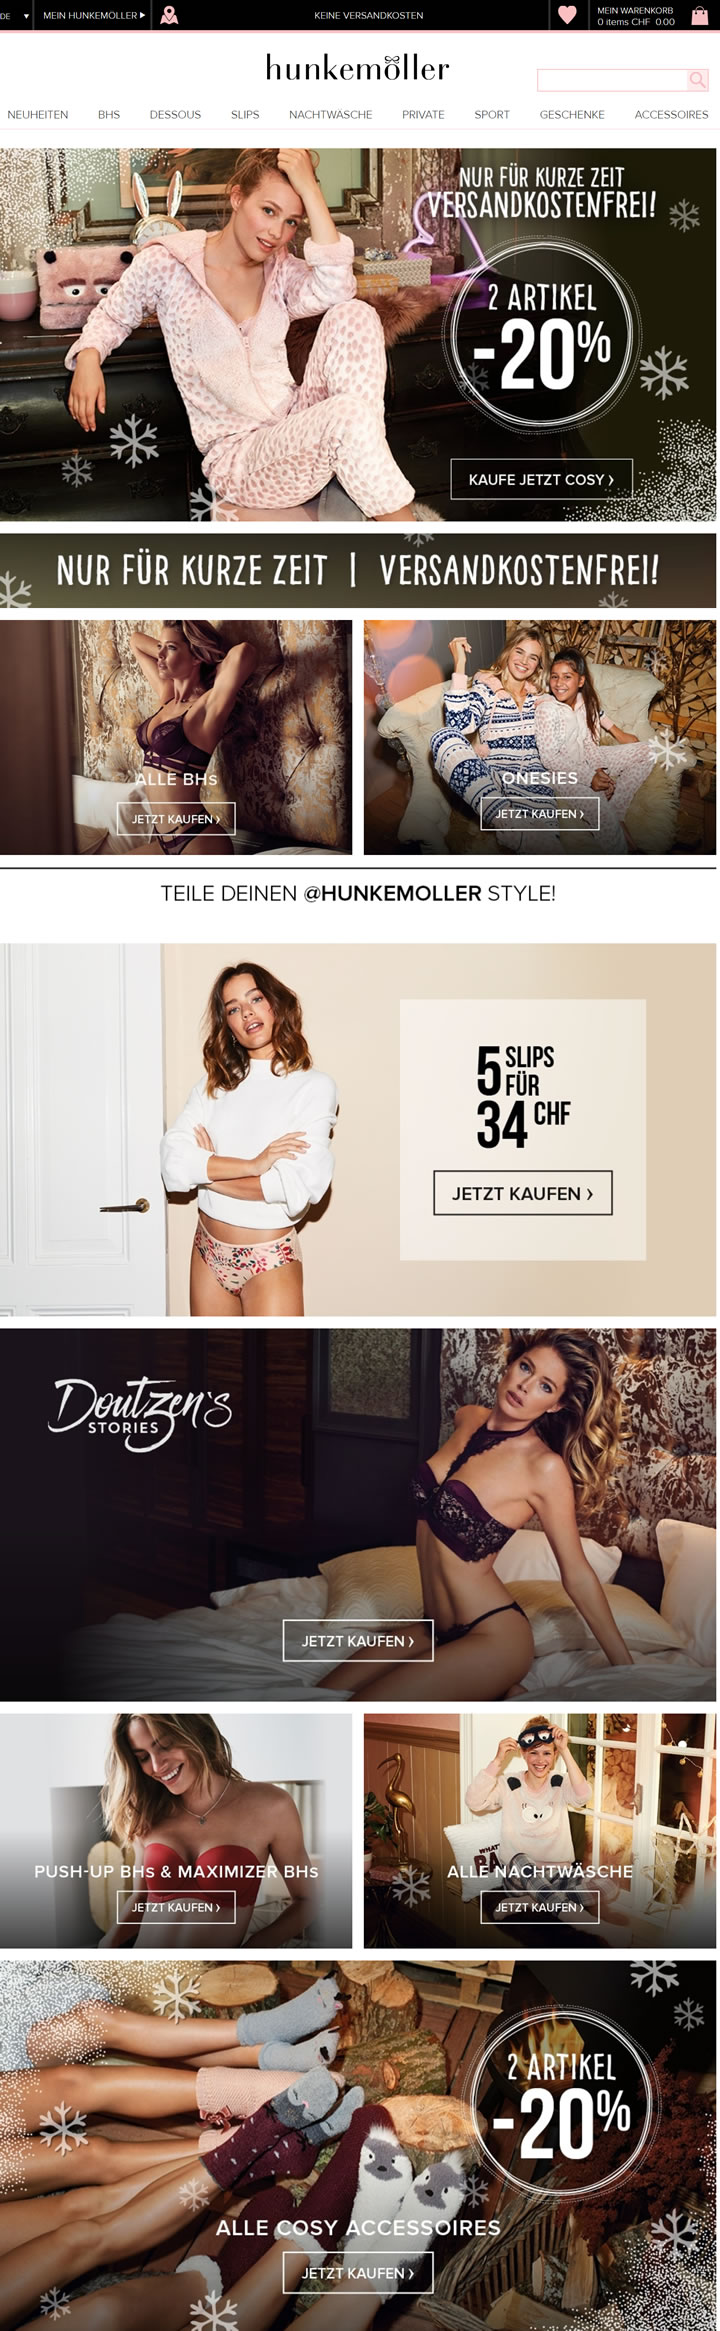 Hunkemöller瑞士网上商店：欧洲最大的内衣品牌之一